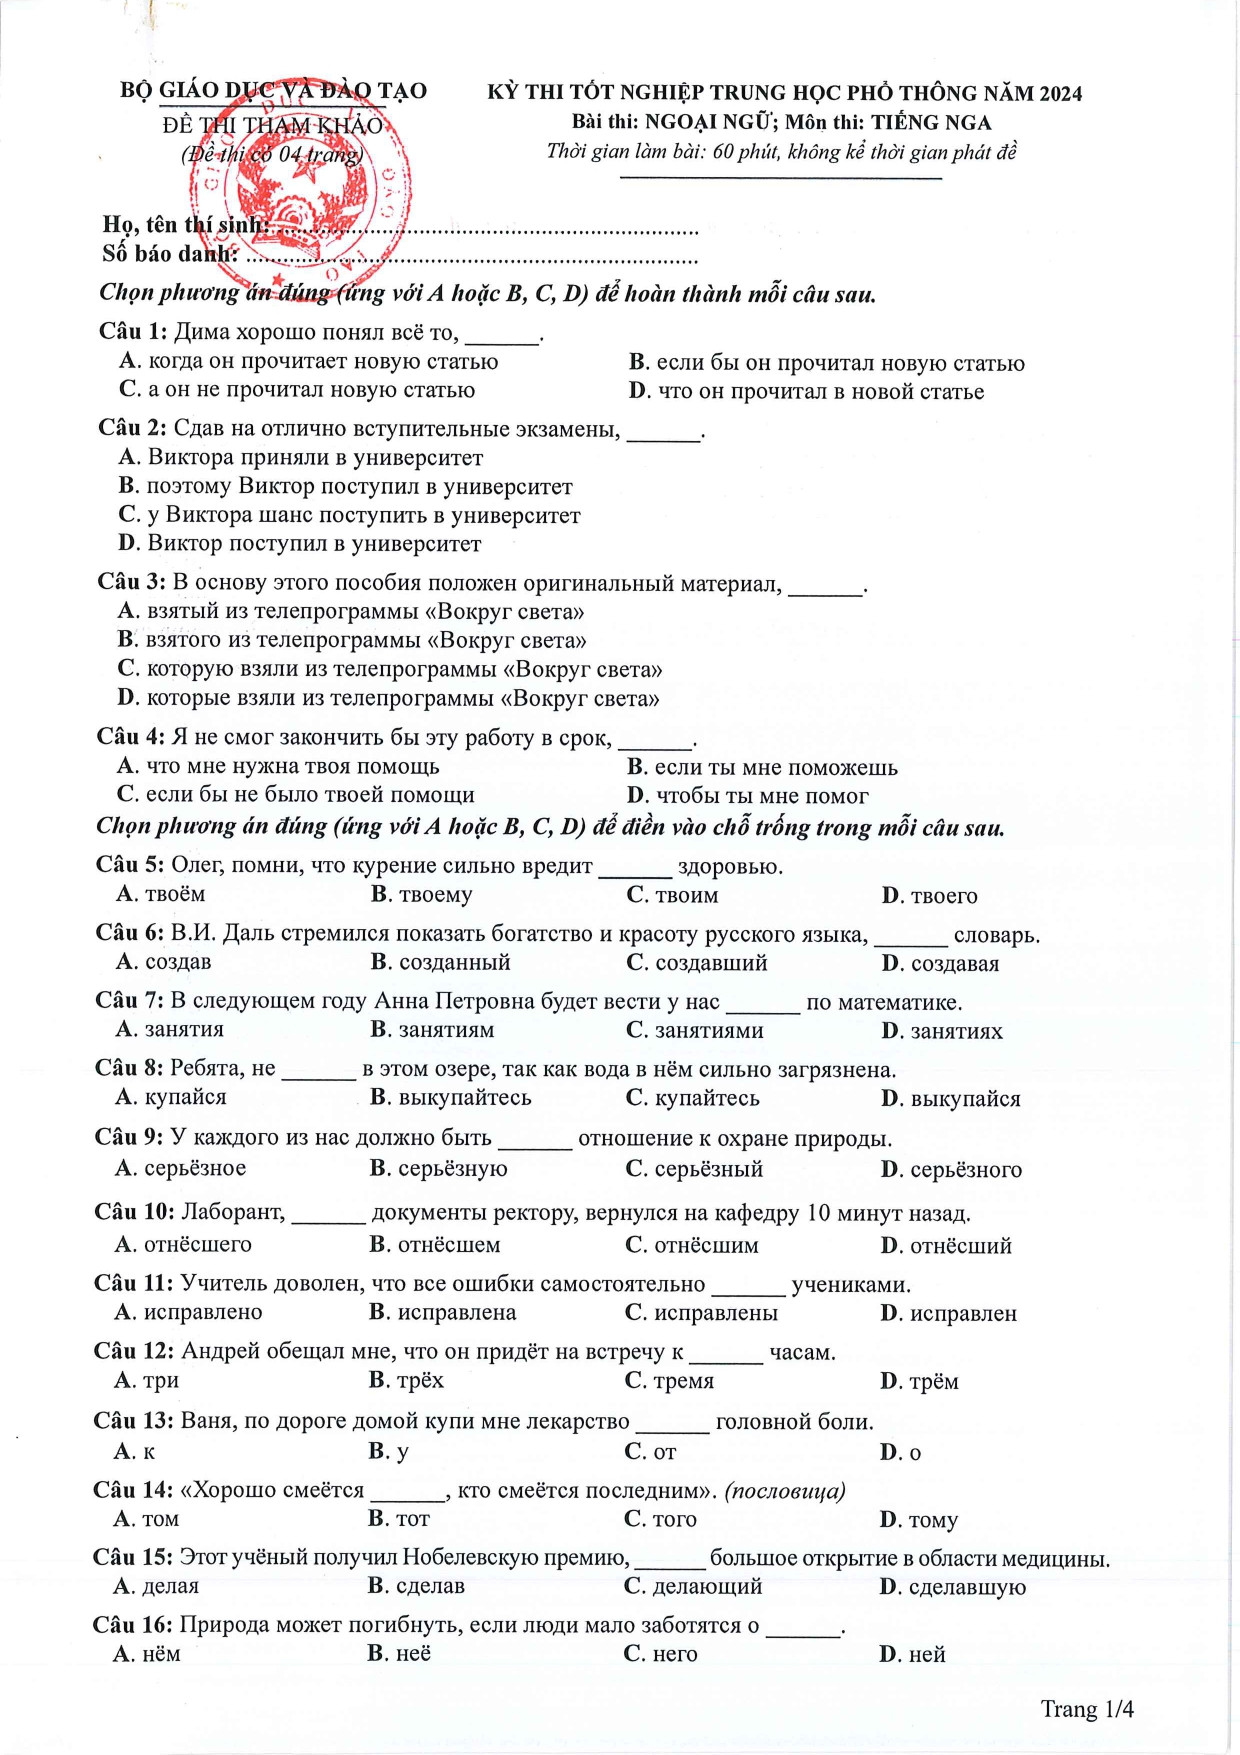 Đề tham khảo tốt nghiệp THPT môn Tiếng Nga năm 2024 (có đáp án chi tiết) (ảnh 1)